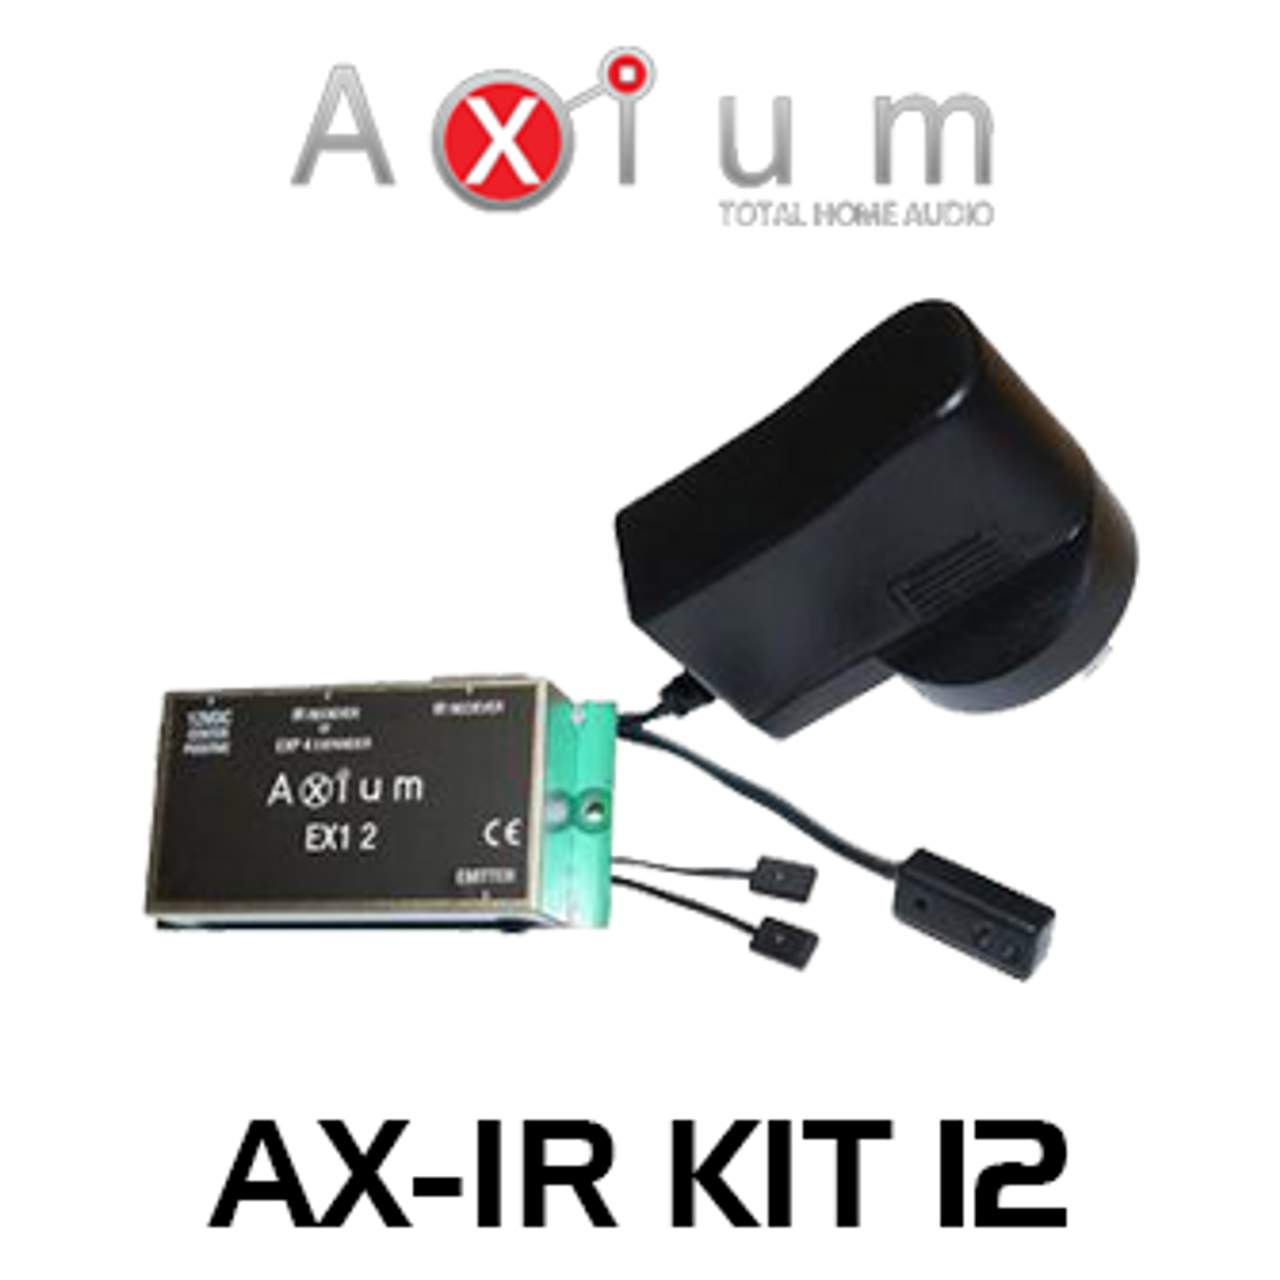 Axium Ax Ir Kit12 Infra Red Receivers Kit Av Australia Online